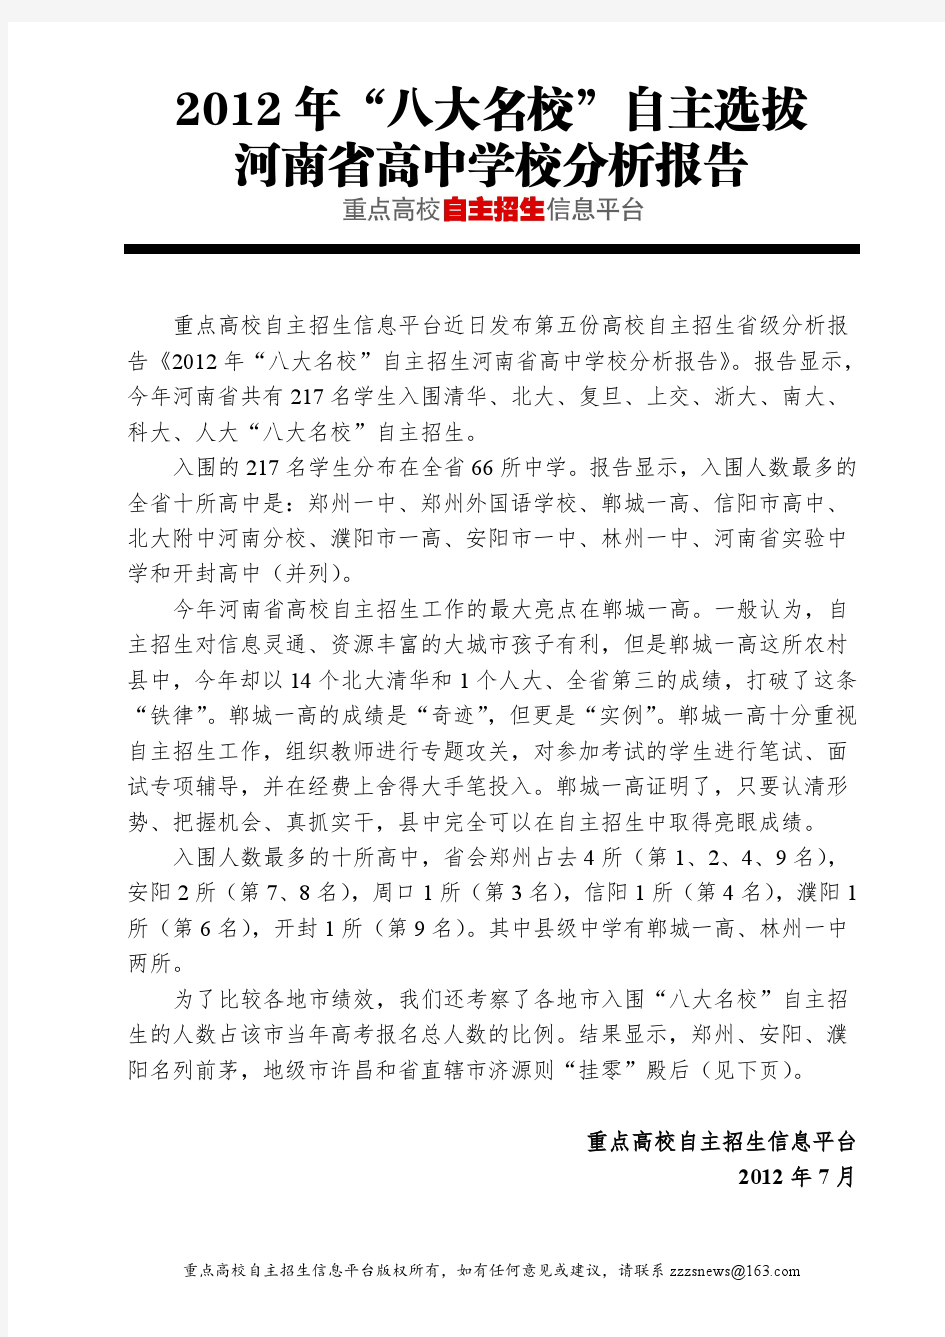 2012年河南省名牌大学自主招生考试分析报告